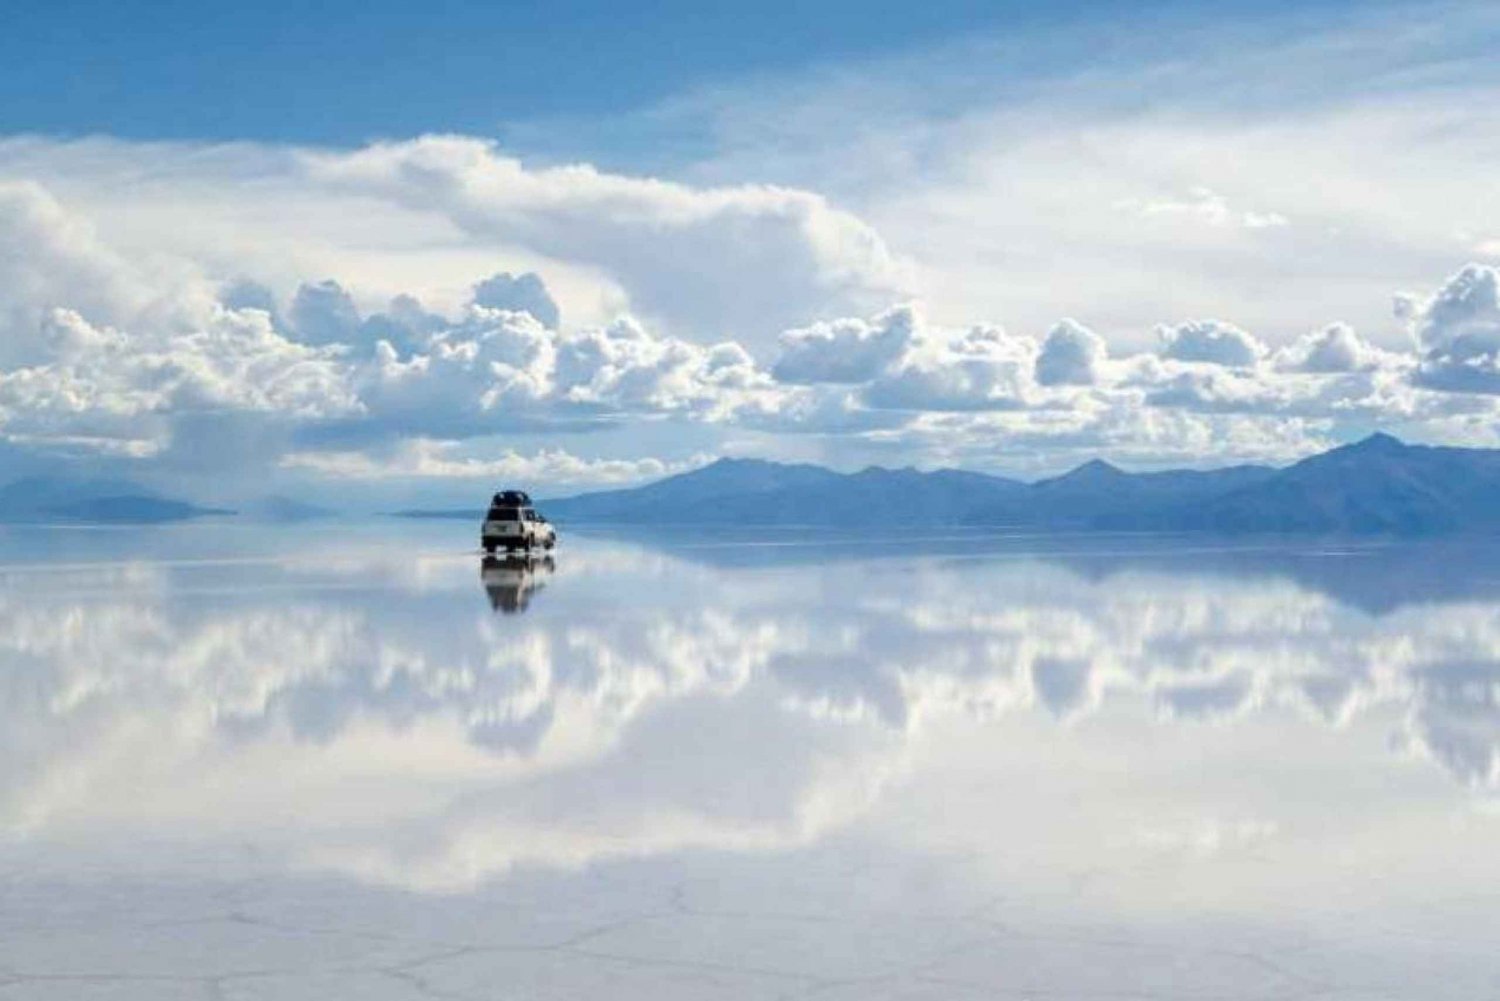 Salar de Uyuni: desde San Pedro de Atacama | 4 días